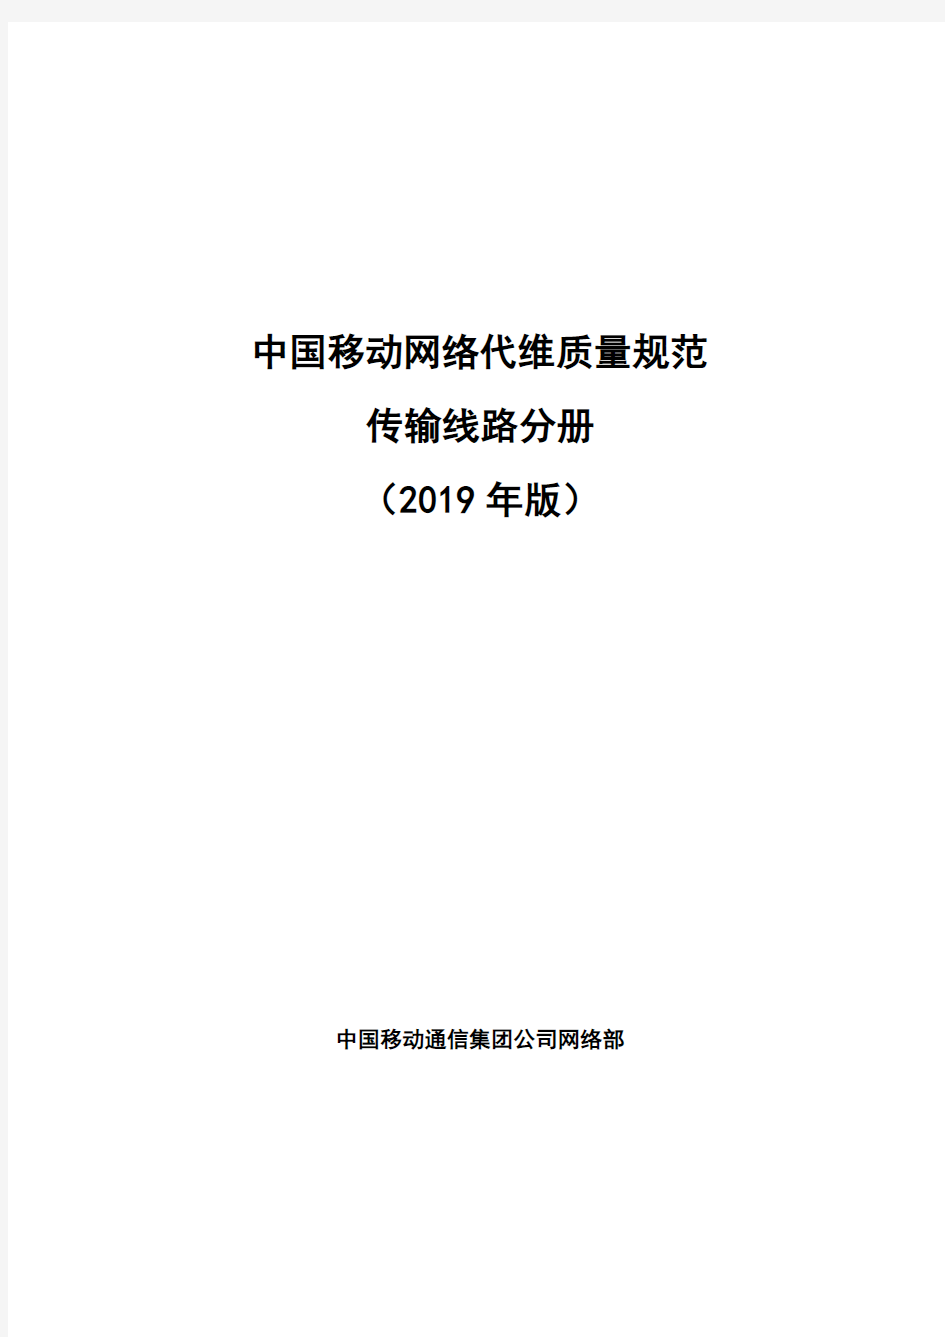 中国移动网络代维质量规范-传输线路分册